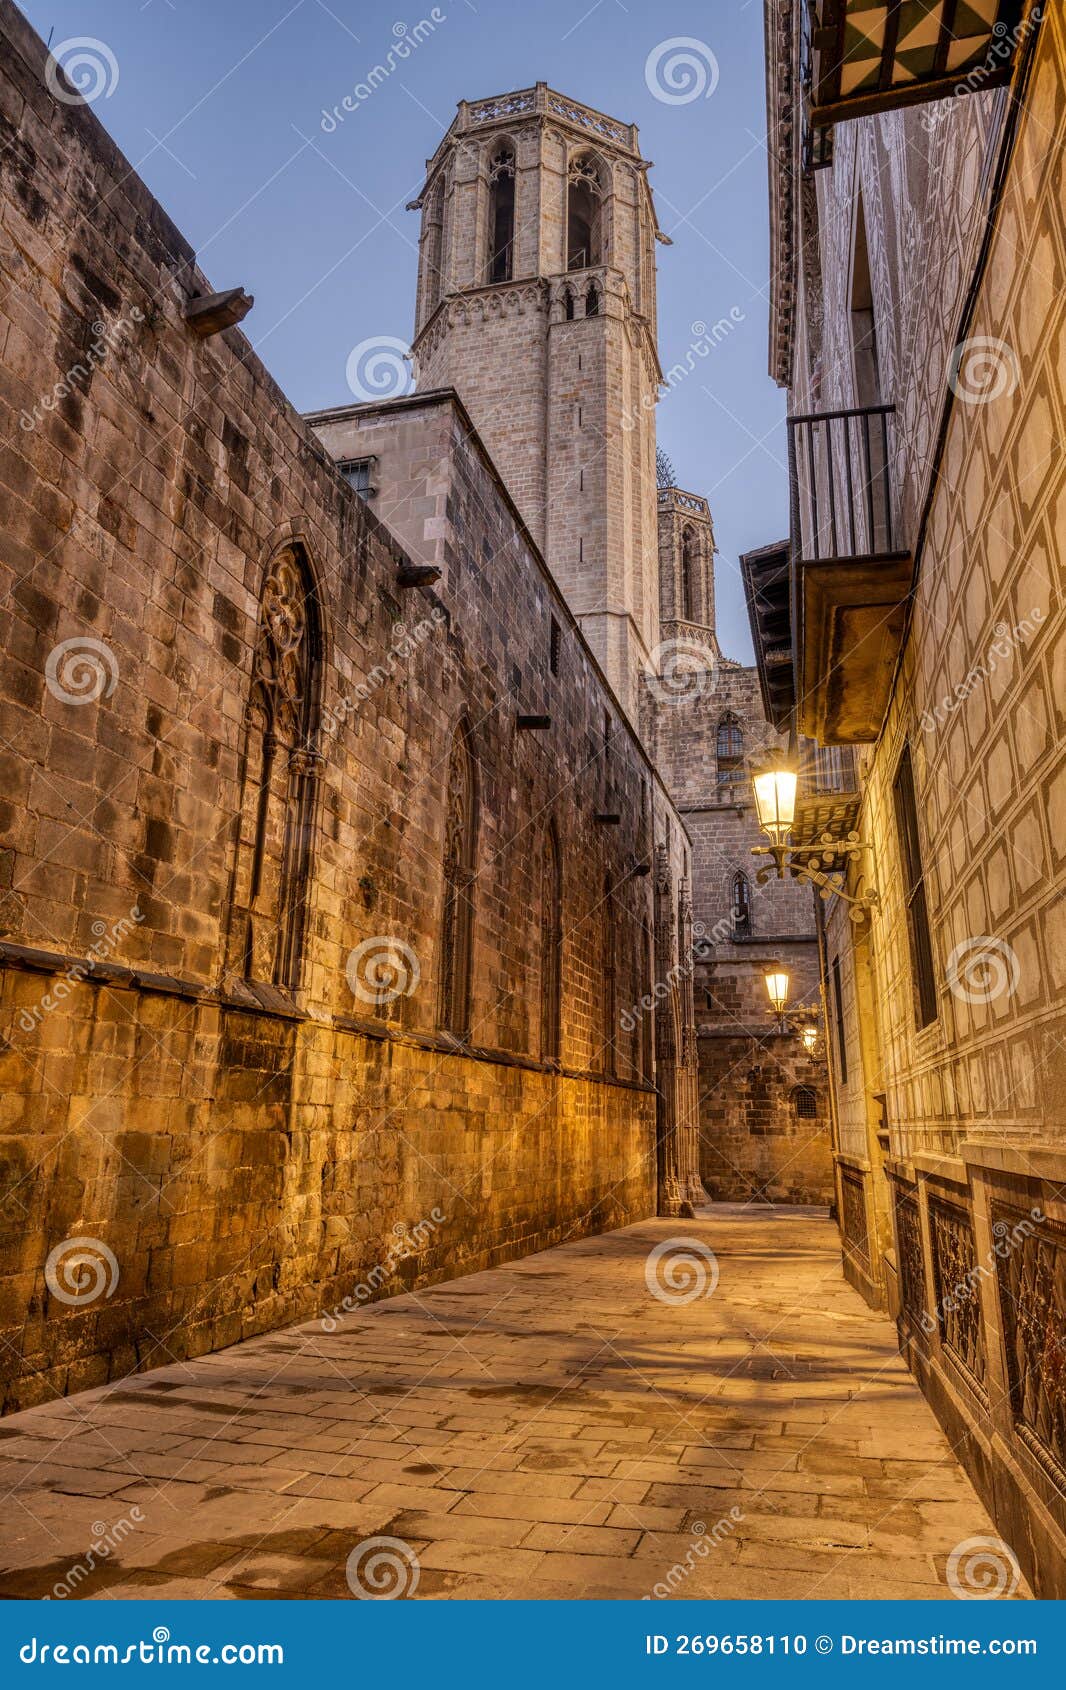 the historic barrio gotico in barcelona at twilight